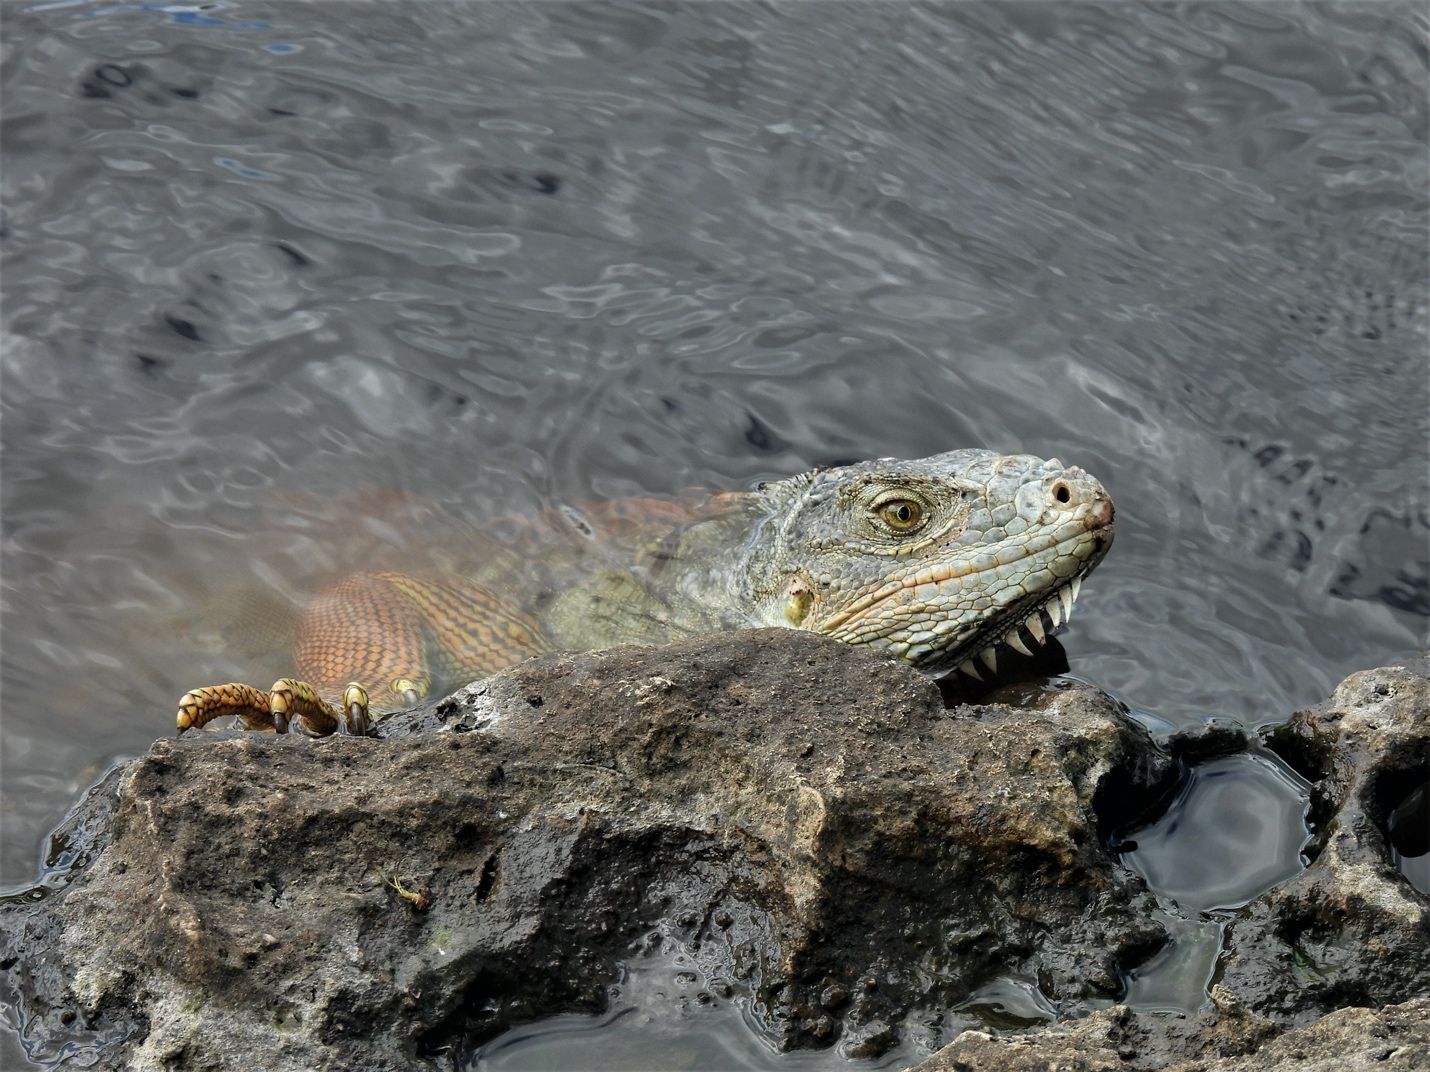 Las iguanas verdes (Iguana iguana) son nadadoras excelentes y por lo general se encuentran cerca del agua. Se sumergen rápidamente en el agua cuando se sienten amenazadas, incluso desde lo alto de un árbol, y solo regresan a la tierra cuando es seguro hacerlo.